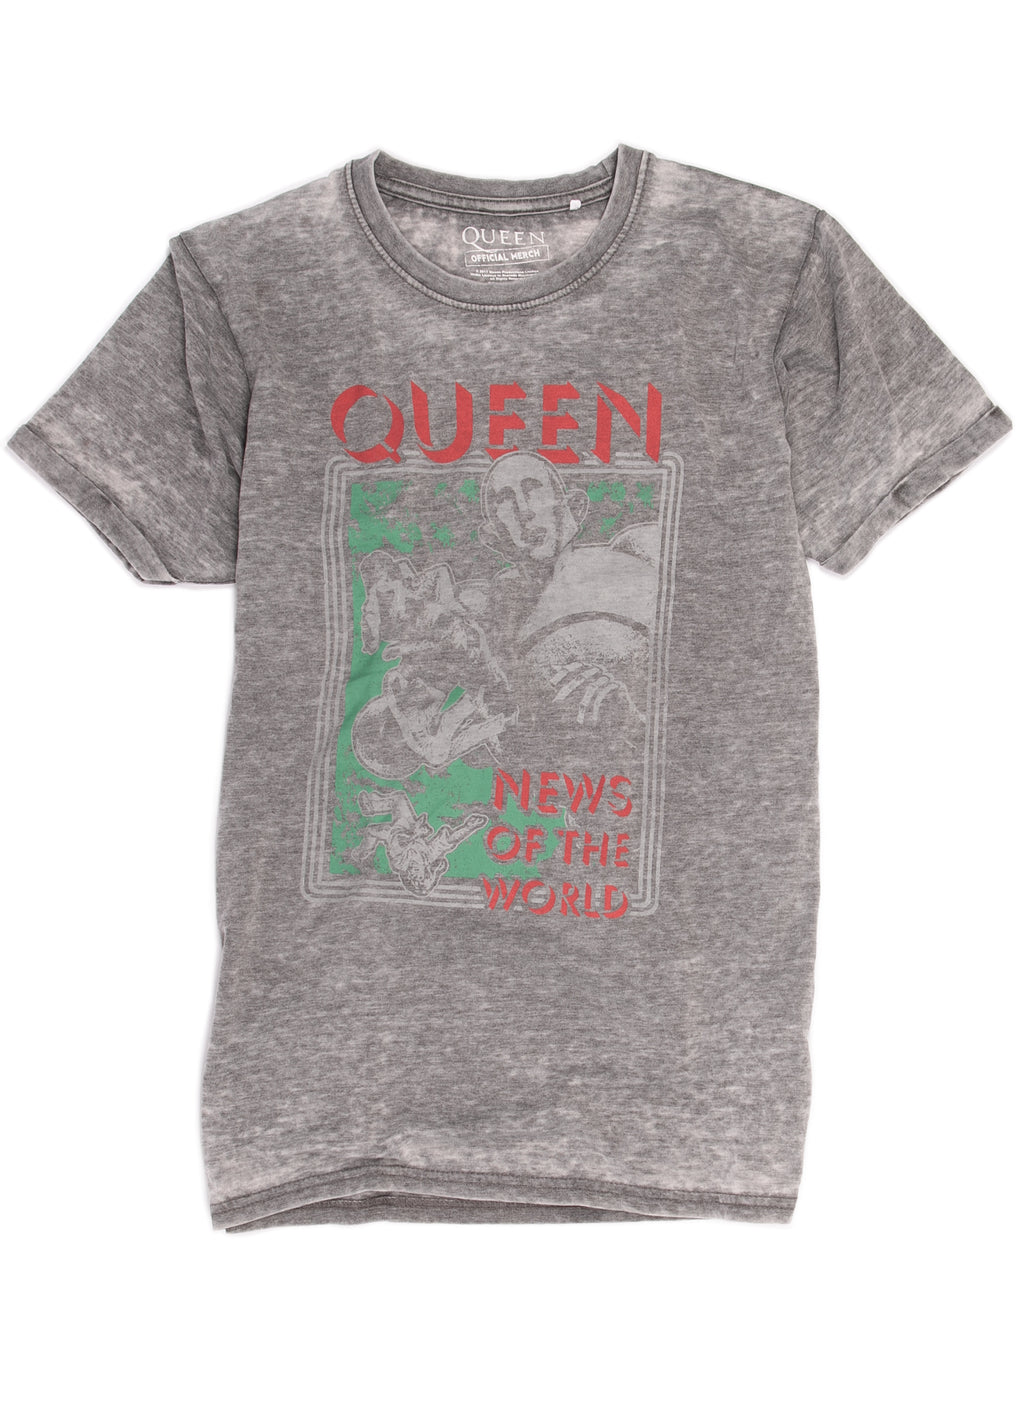 Queen "News of the World" t-shirt.